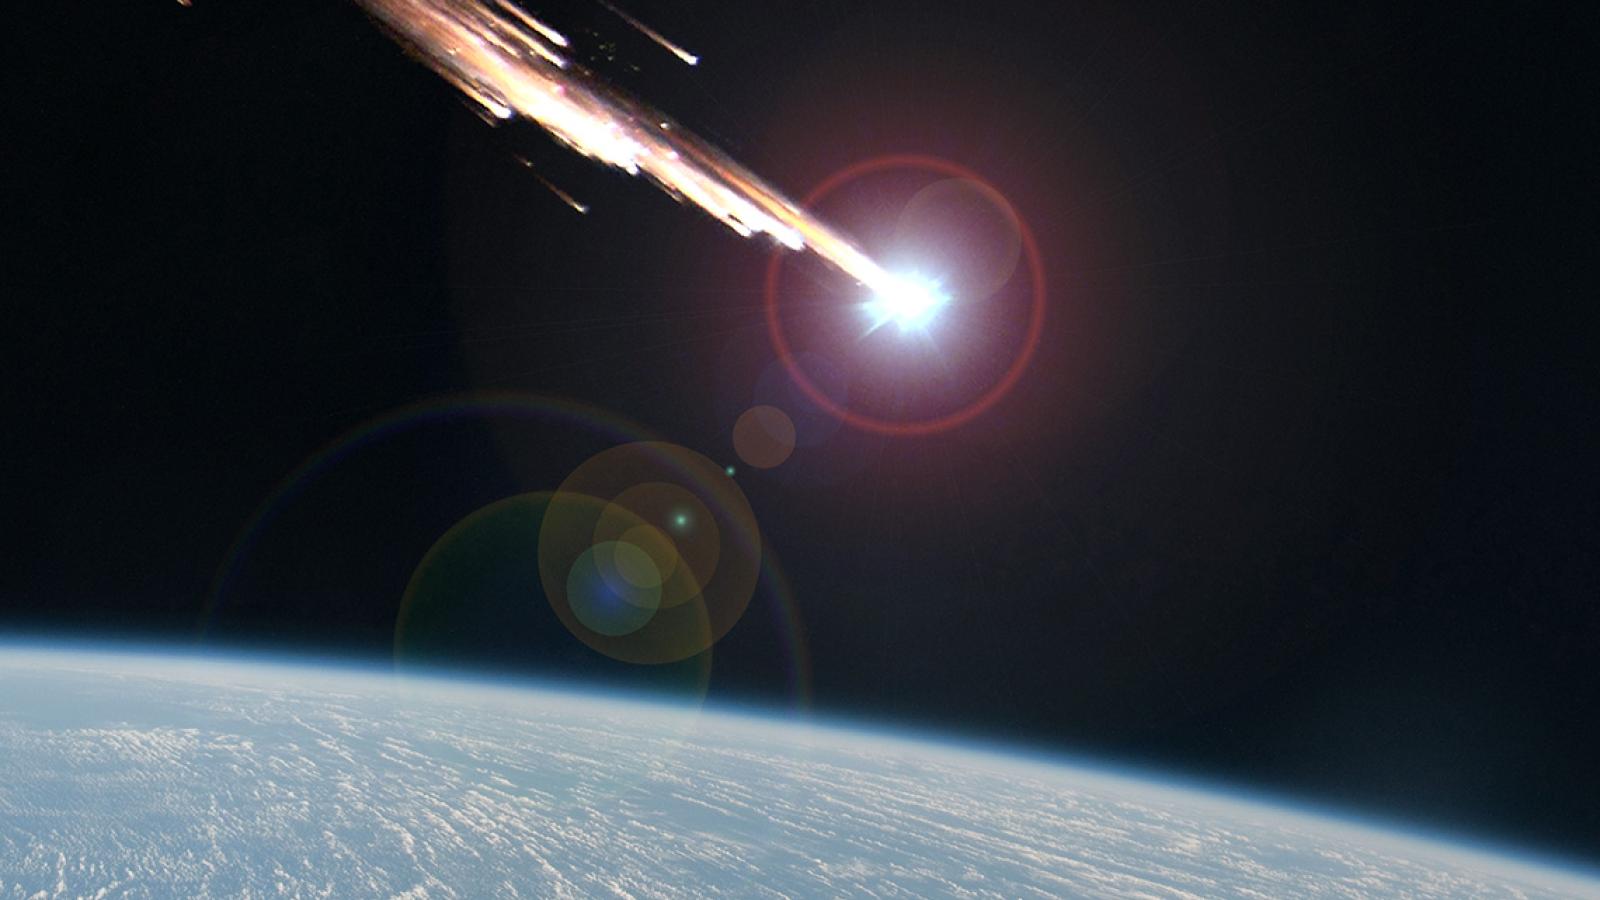 Space debris entering the atmosphere